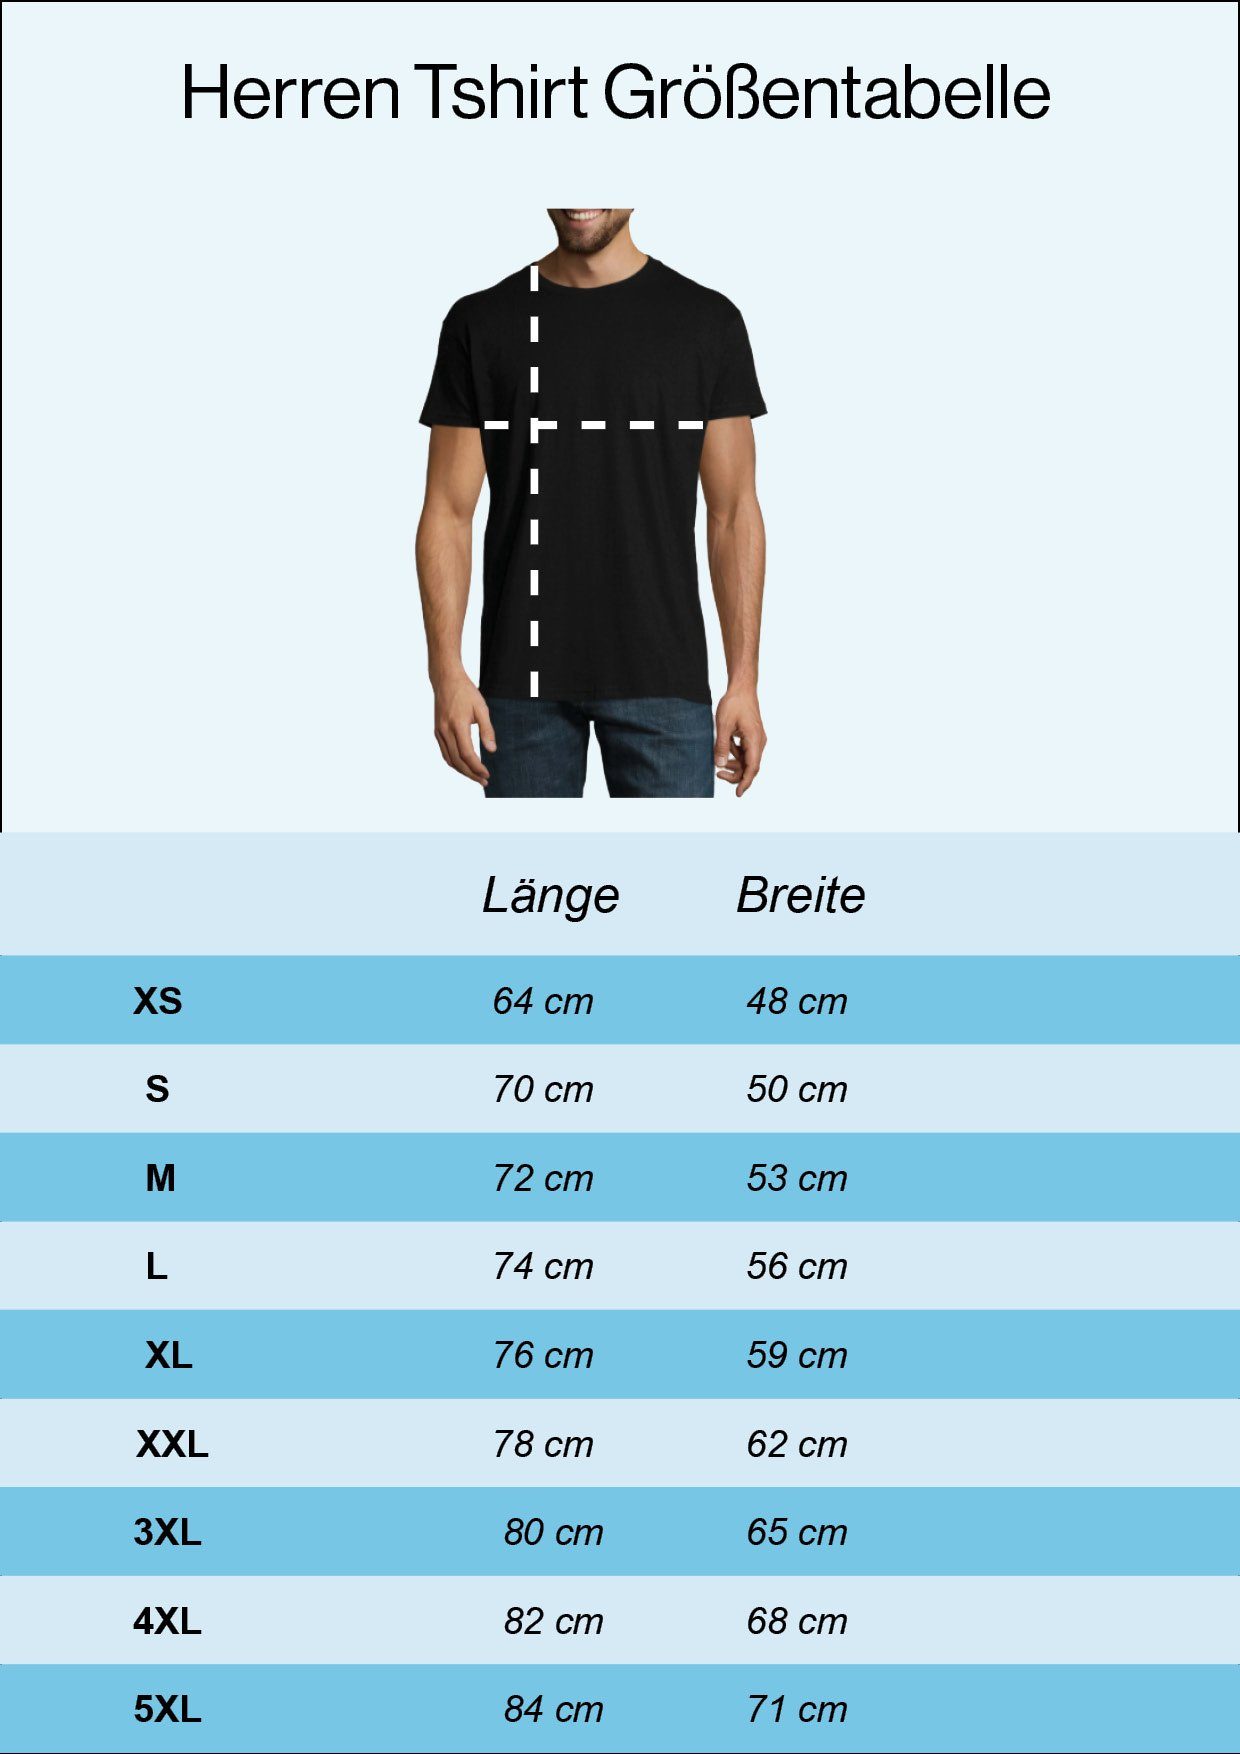 Noch T-Shirt Spruch Designz Navyblau Und 40 Shirt Immer Gutaussehend mit Youth Print lustigem Herren